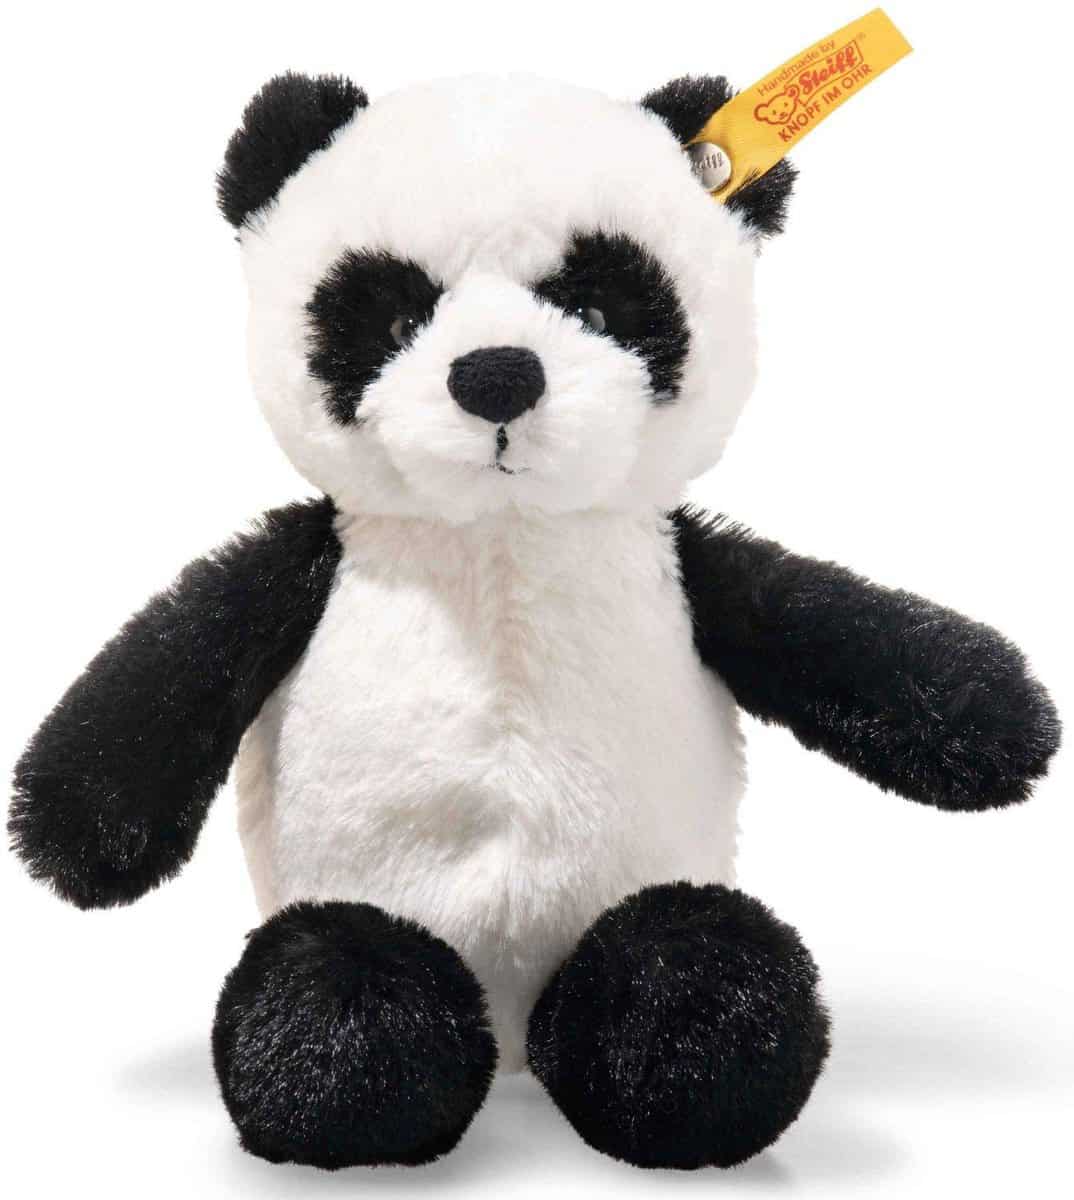 Steiff 75810 Soft Cuddly Friends Ming Panda, schwarz/weiß für 12,79 € (Prime) statt 17,92 €